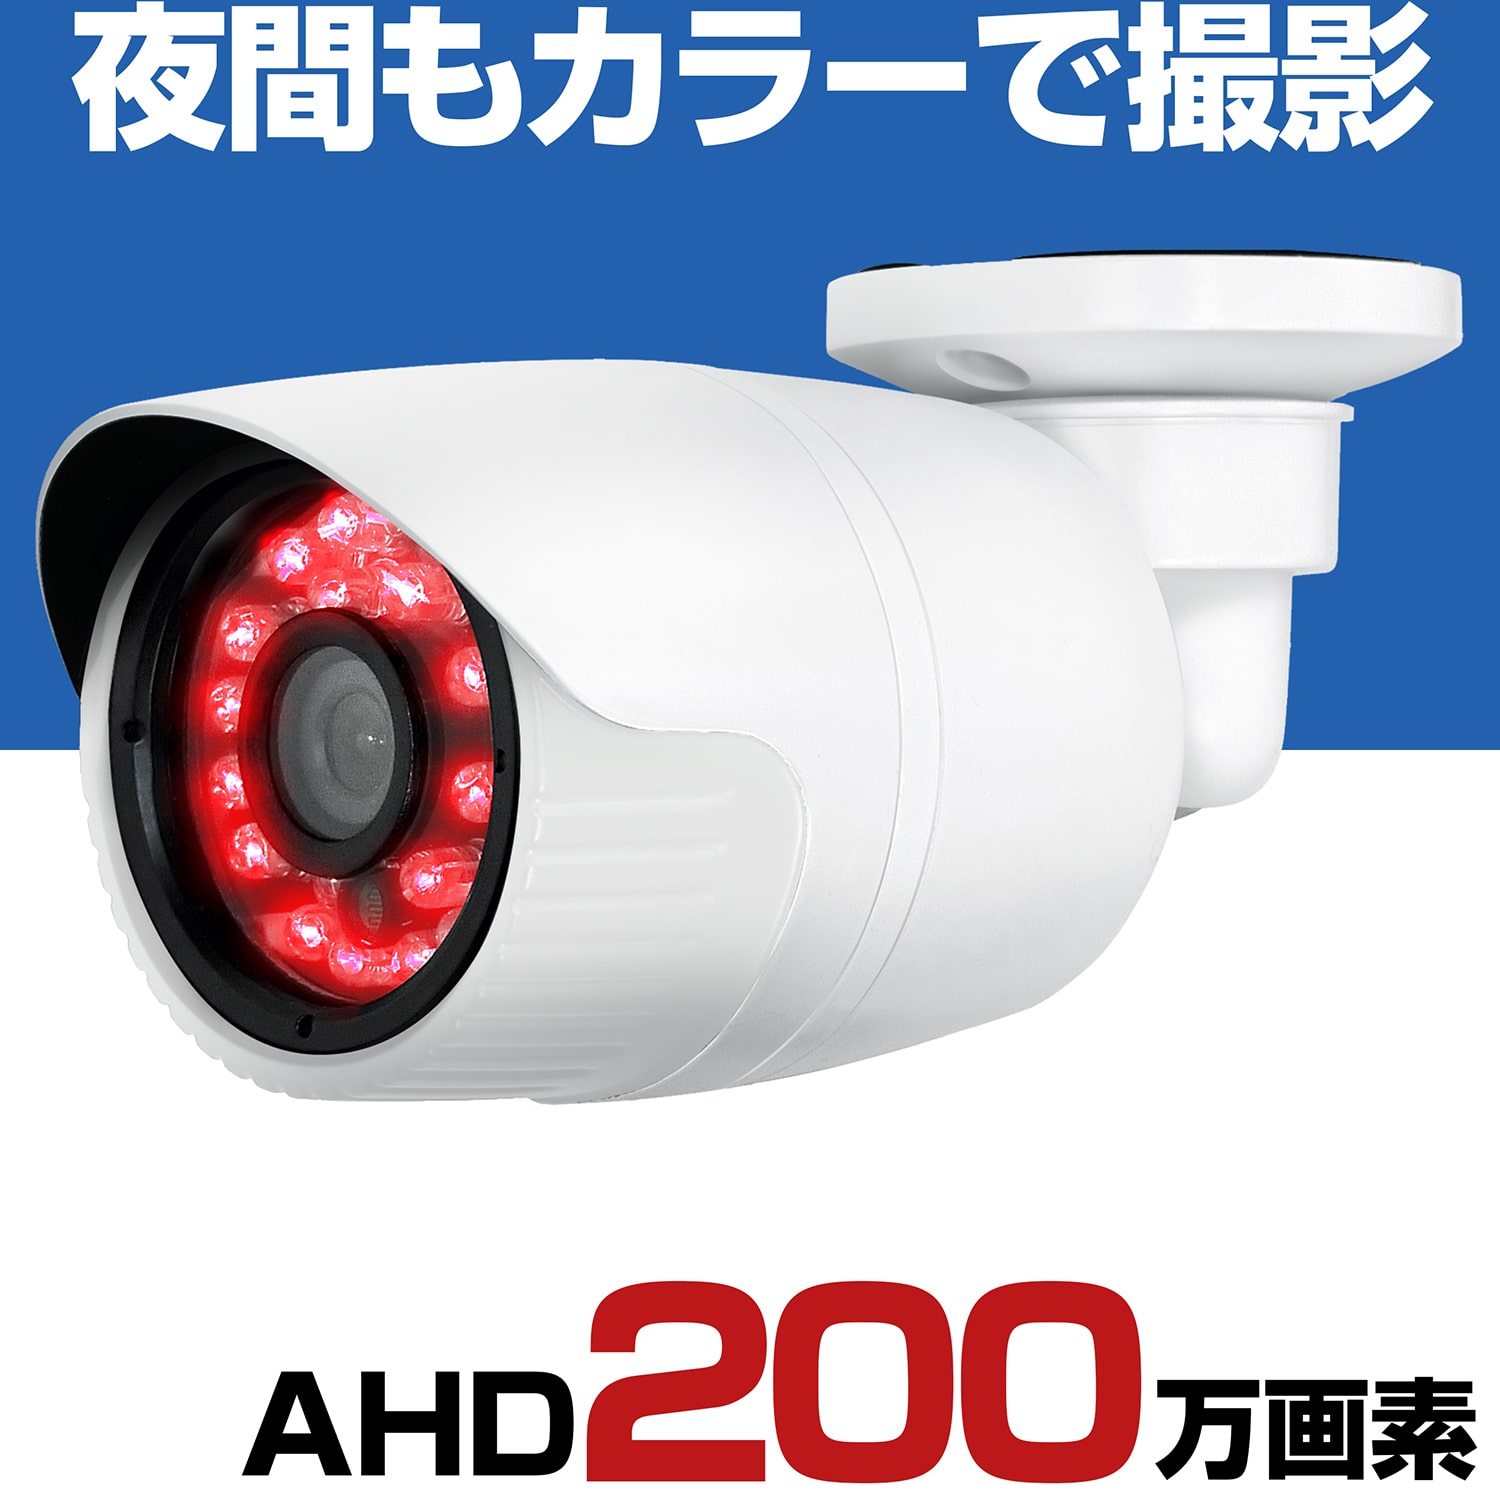 防犯カメラ 屋外 有線 家庭用 AHD 200万画素 スター